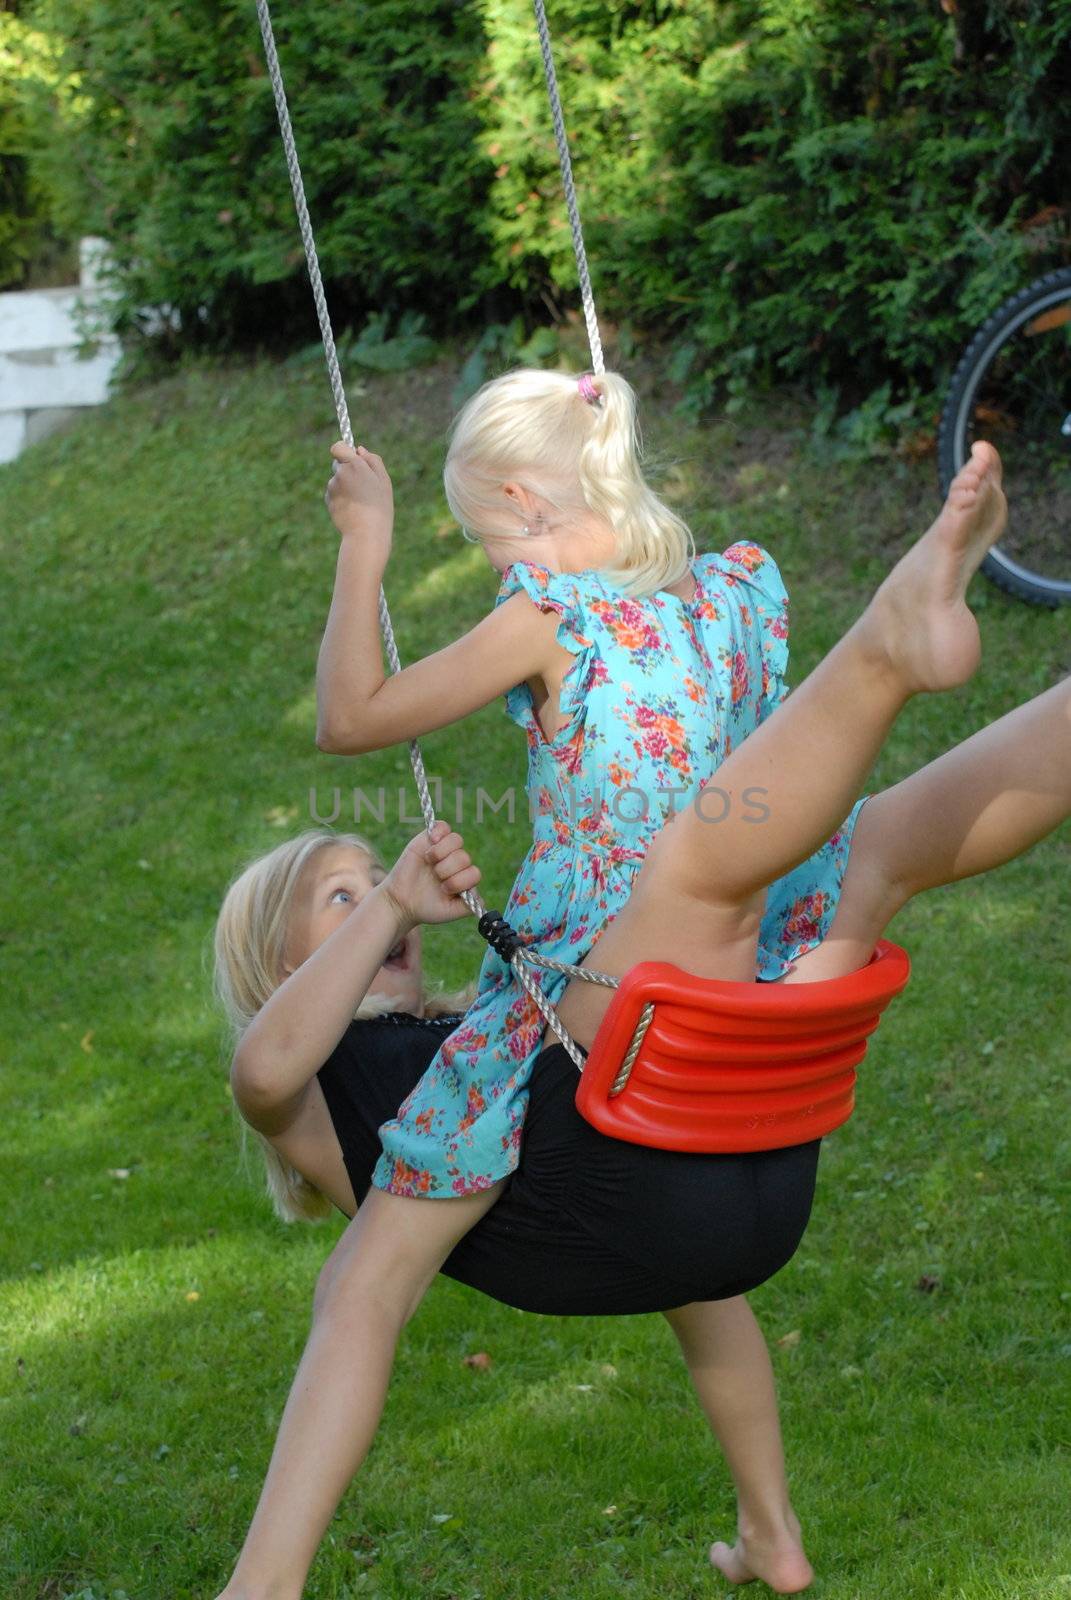 Girls on a swing by Bildehagen